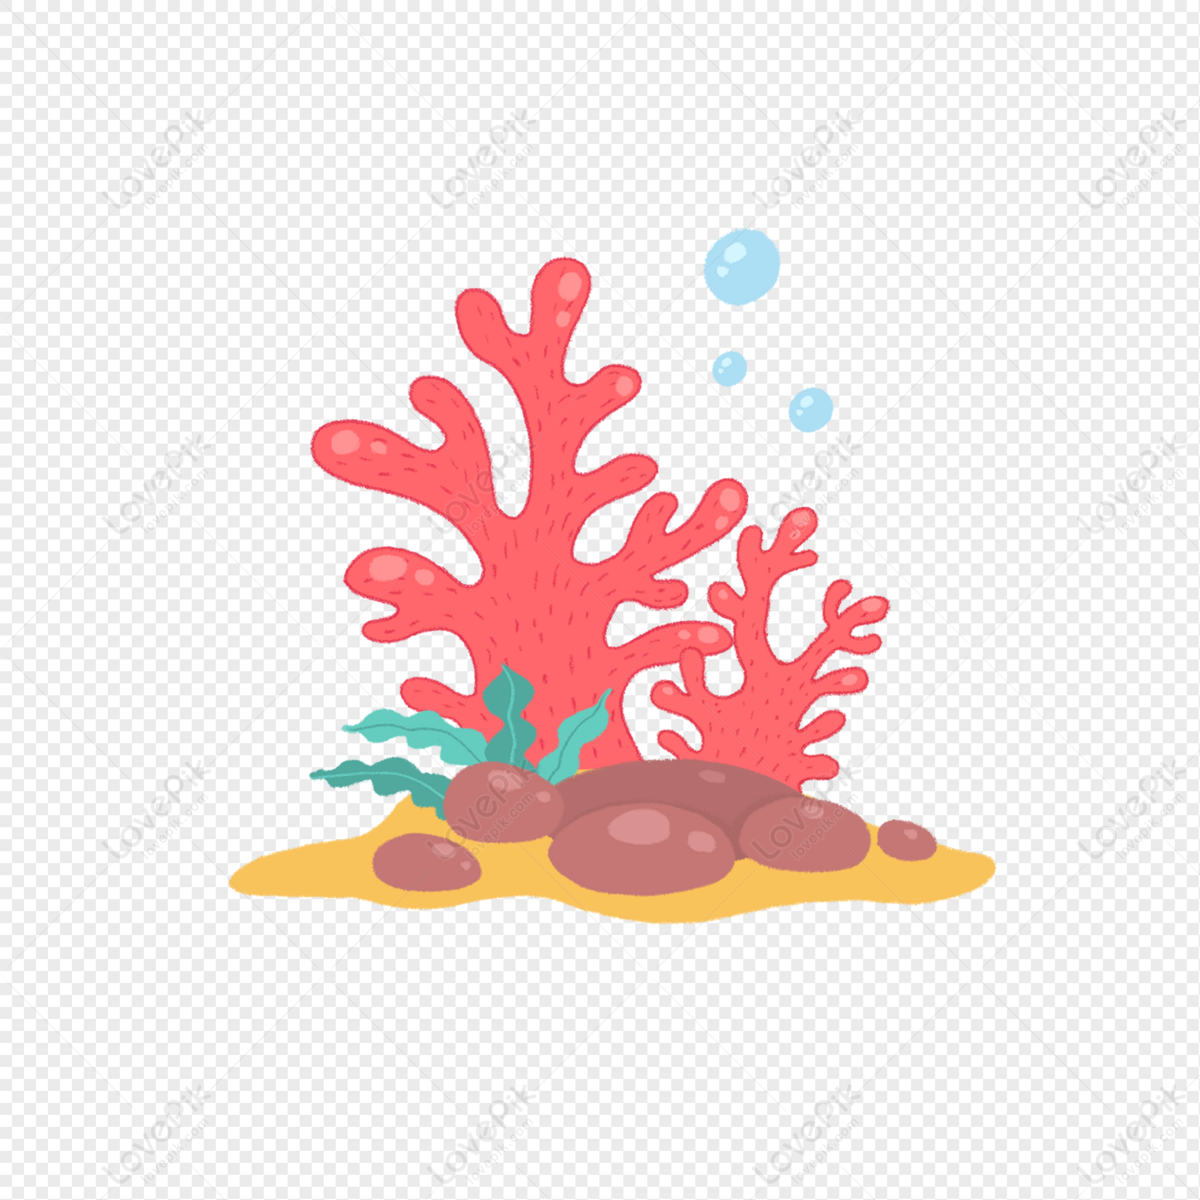 Muôn sắc màu của san hô đỏ thuần khiết tươi trẻ sẽ khiến bạn say lòng. Hãy đón xem hình ảnh về món quà tuyệt vời này của đại dương!